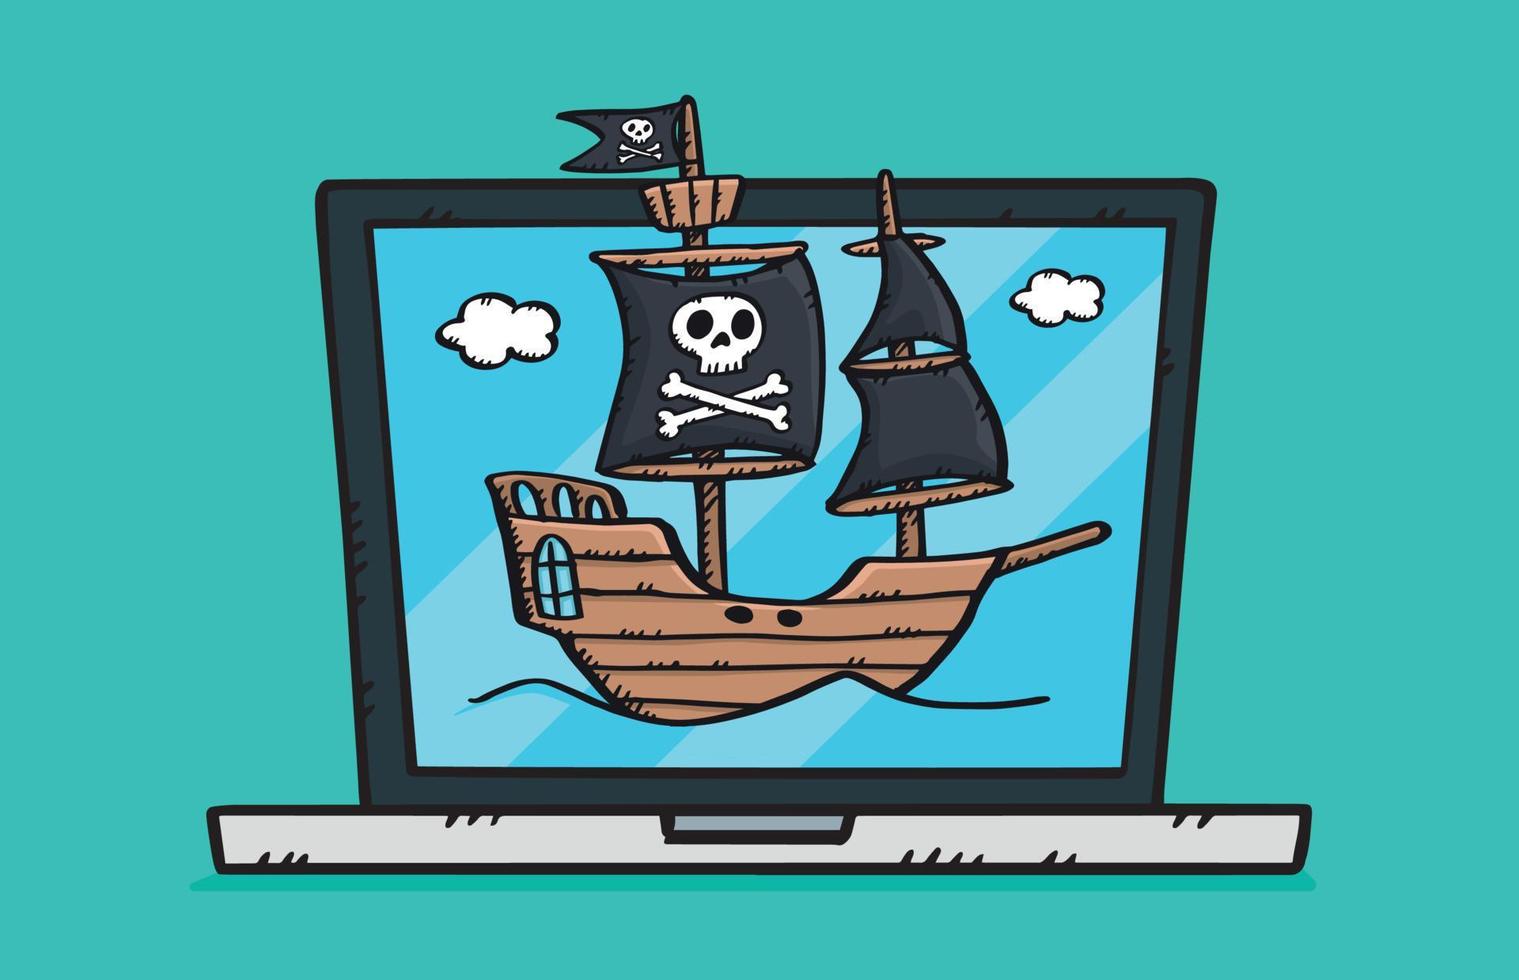 färgglada doodle av bärbar dator med seglande piratskepp på skärmen. vektor